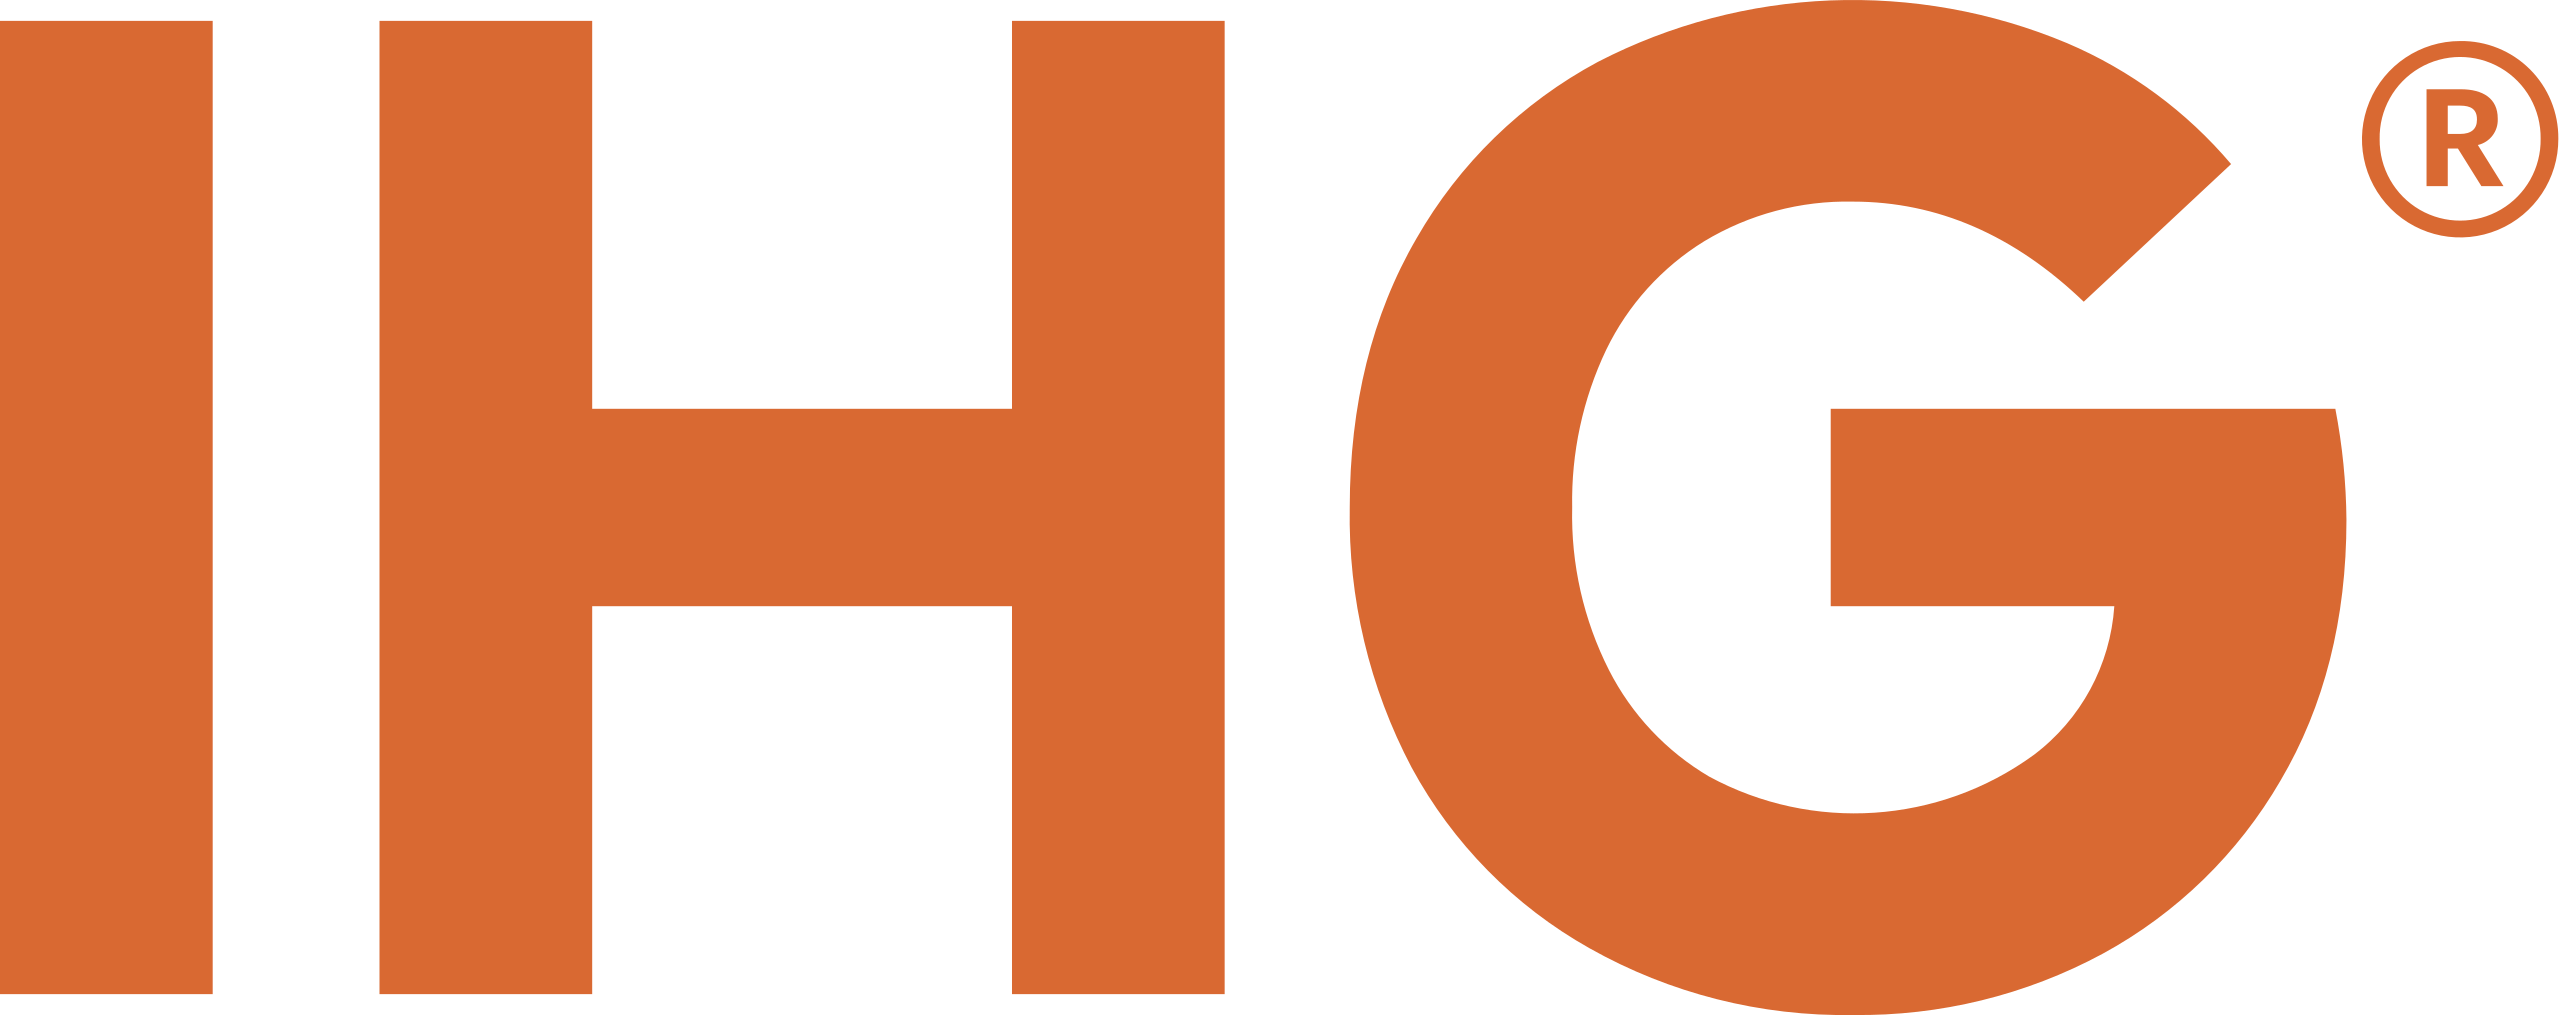 IHG Logo